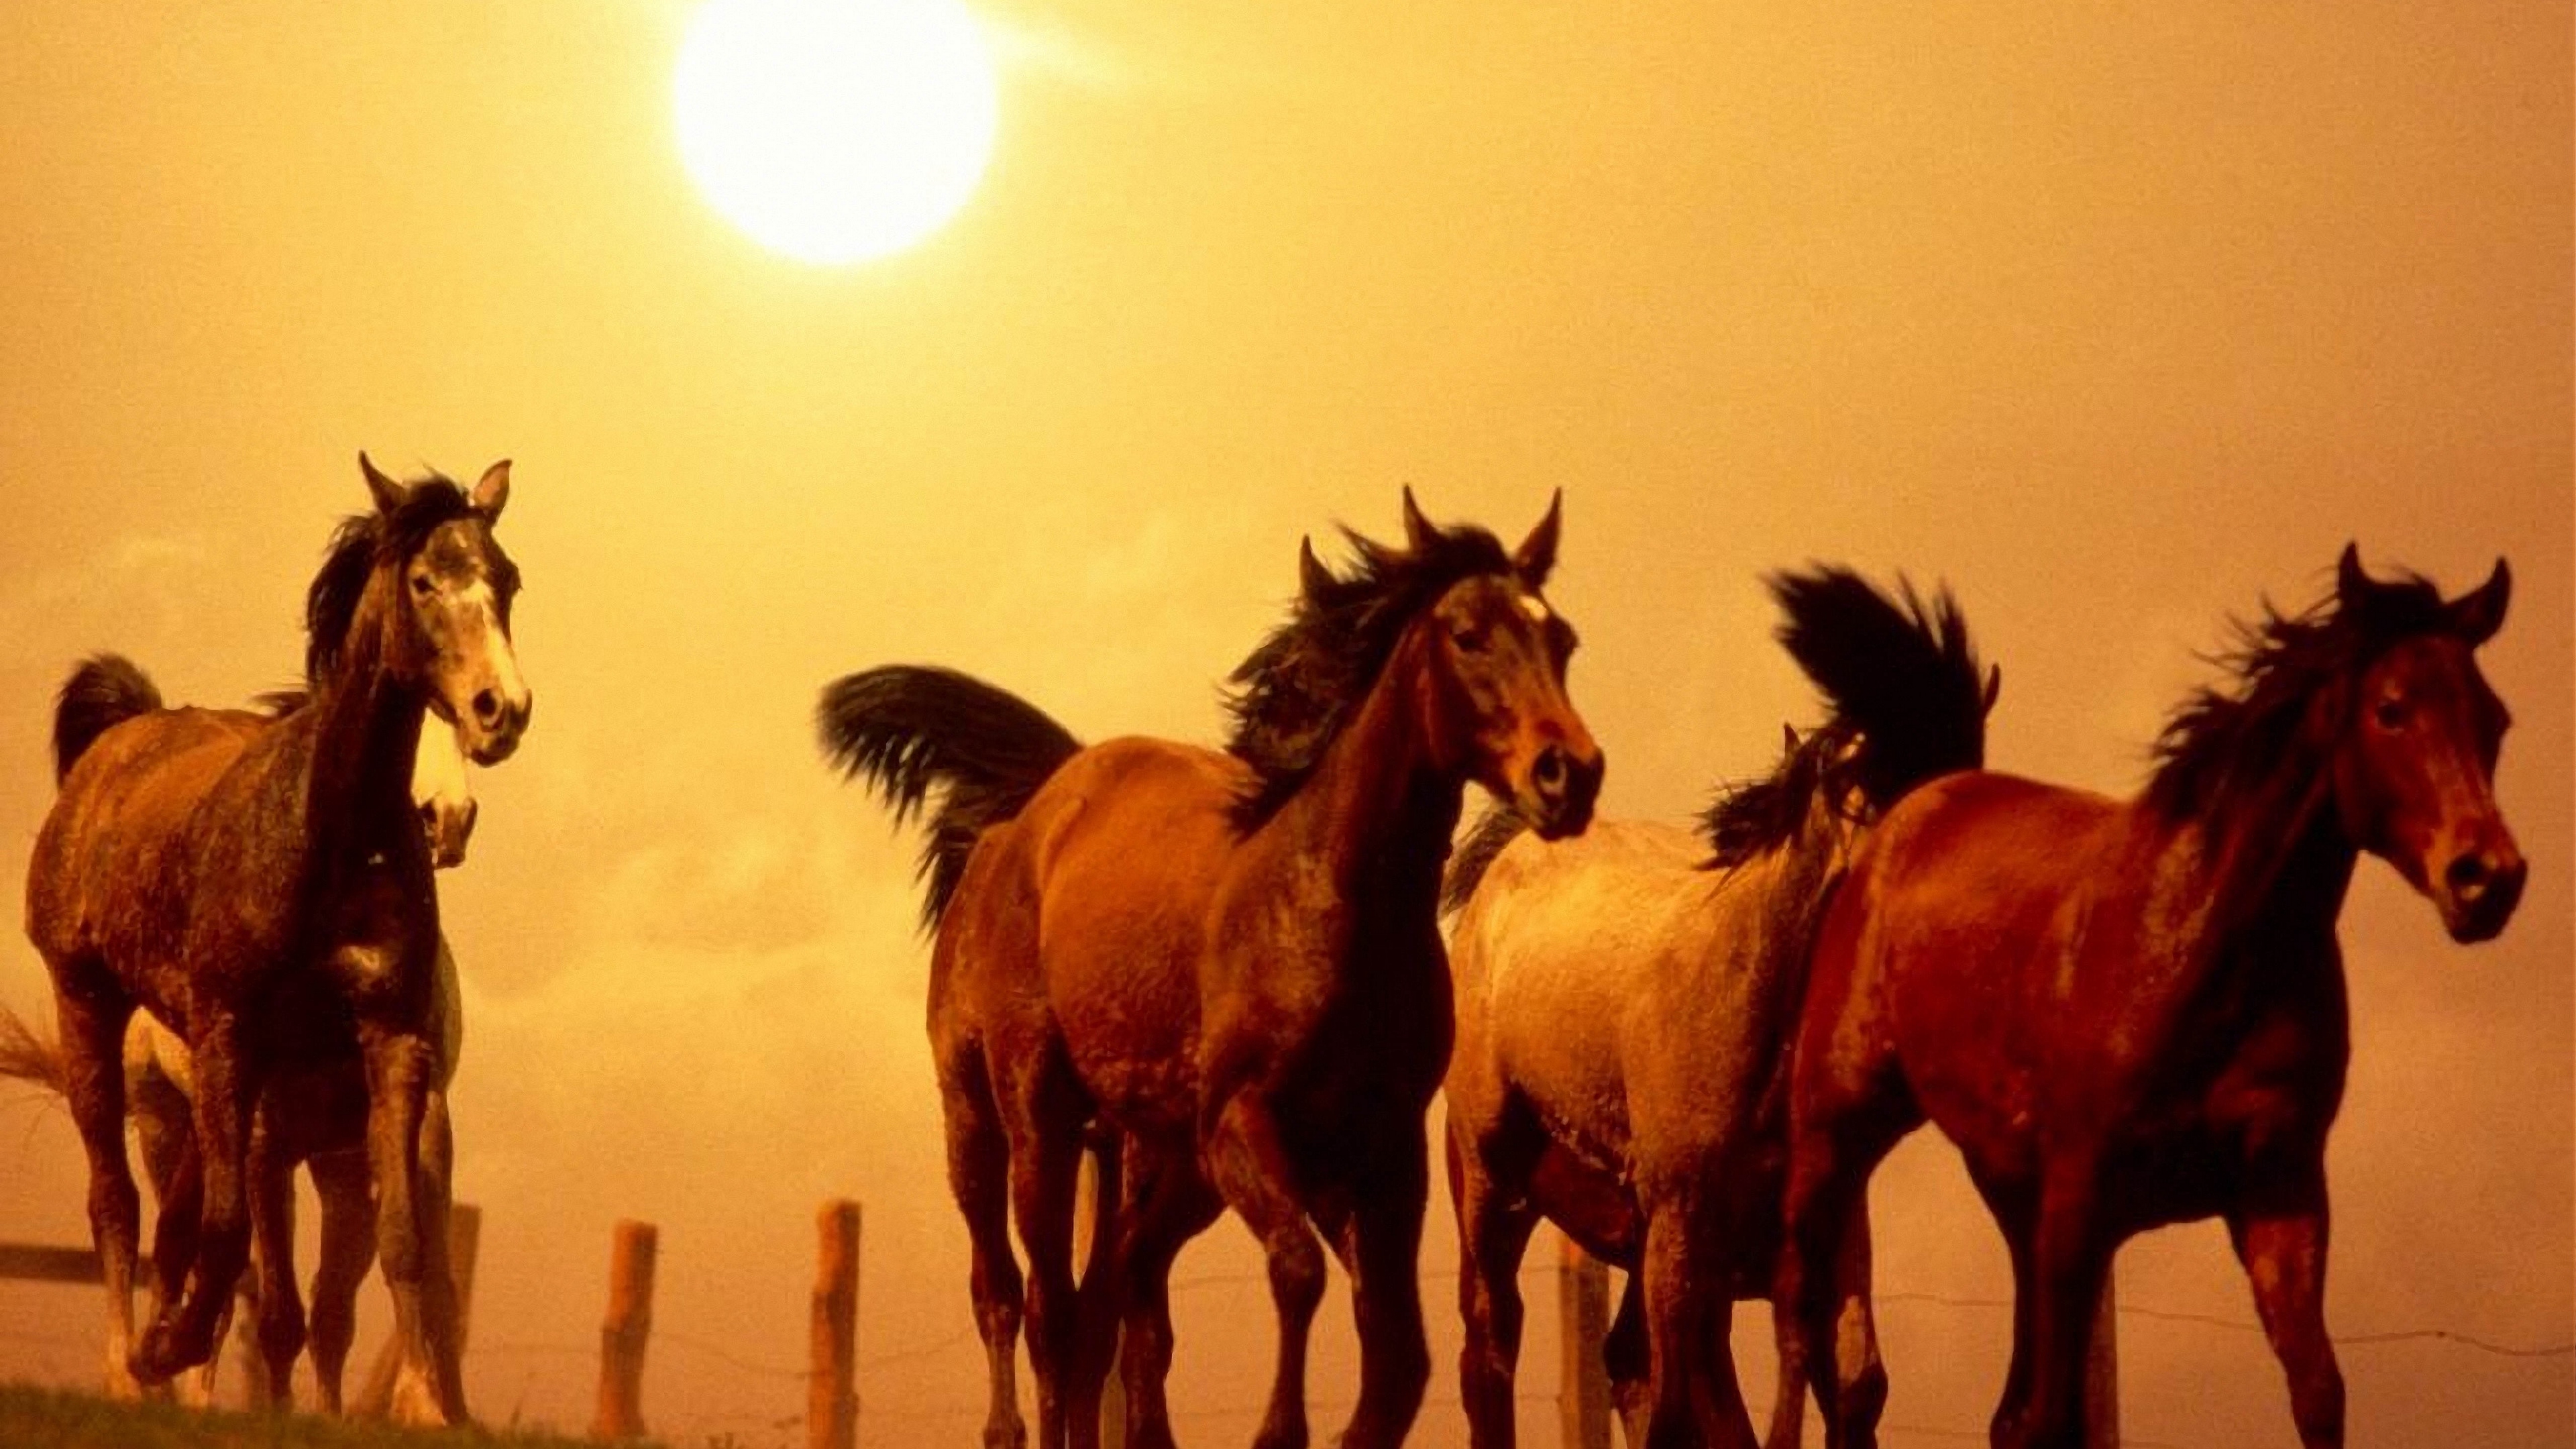 Wallpaper Horse, Running, Sunset - Running Horse - HD Wallpaper 